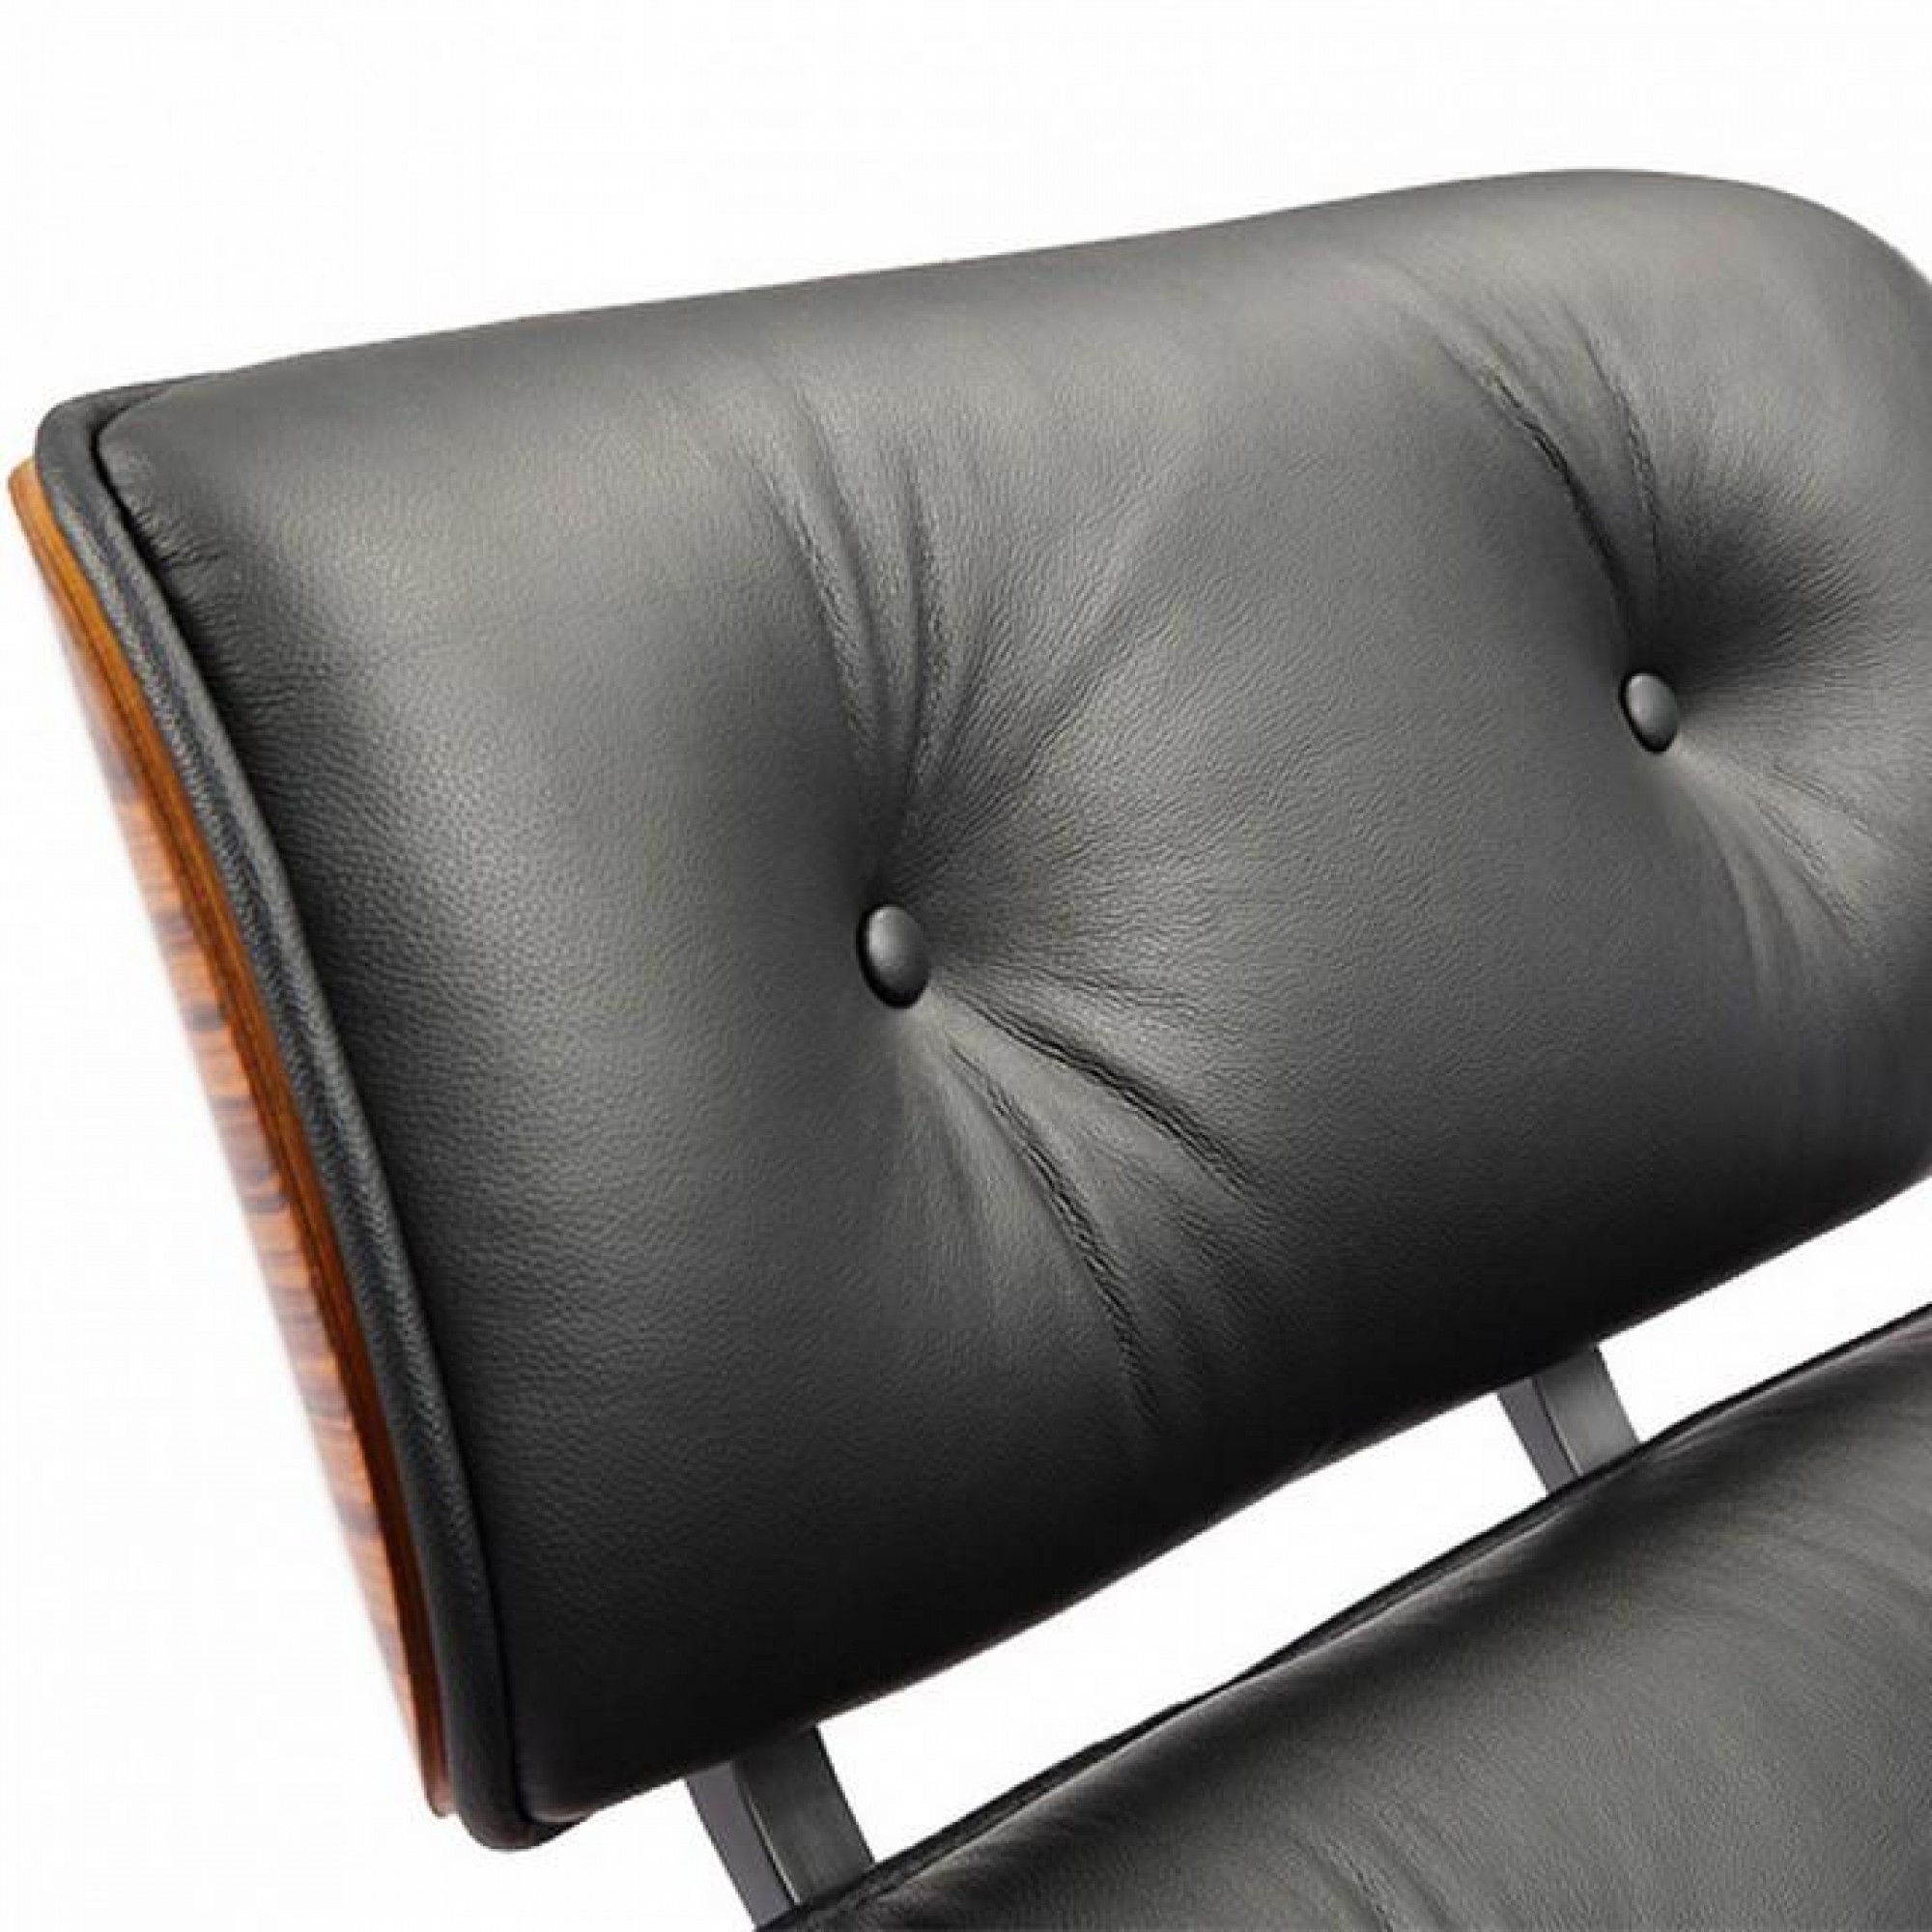 Кресло с пуфом Eames Lounge Chair    BDX_FR0016-17